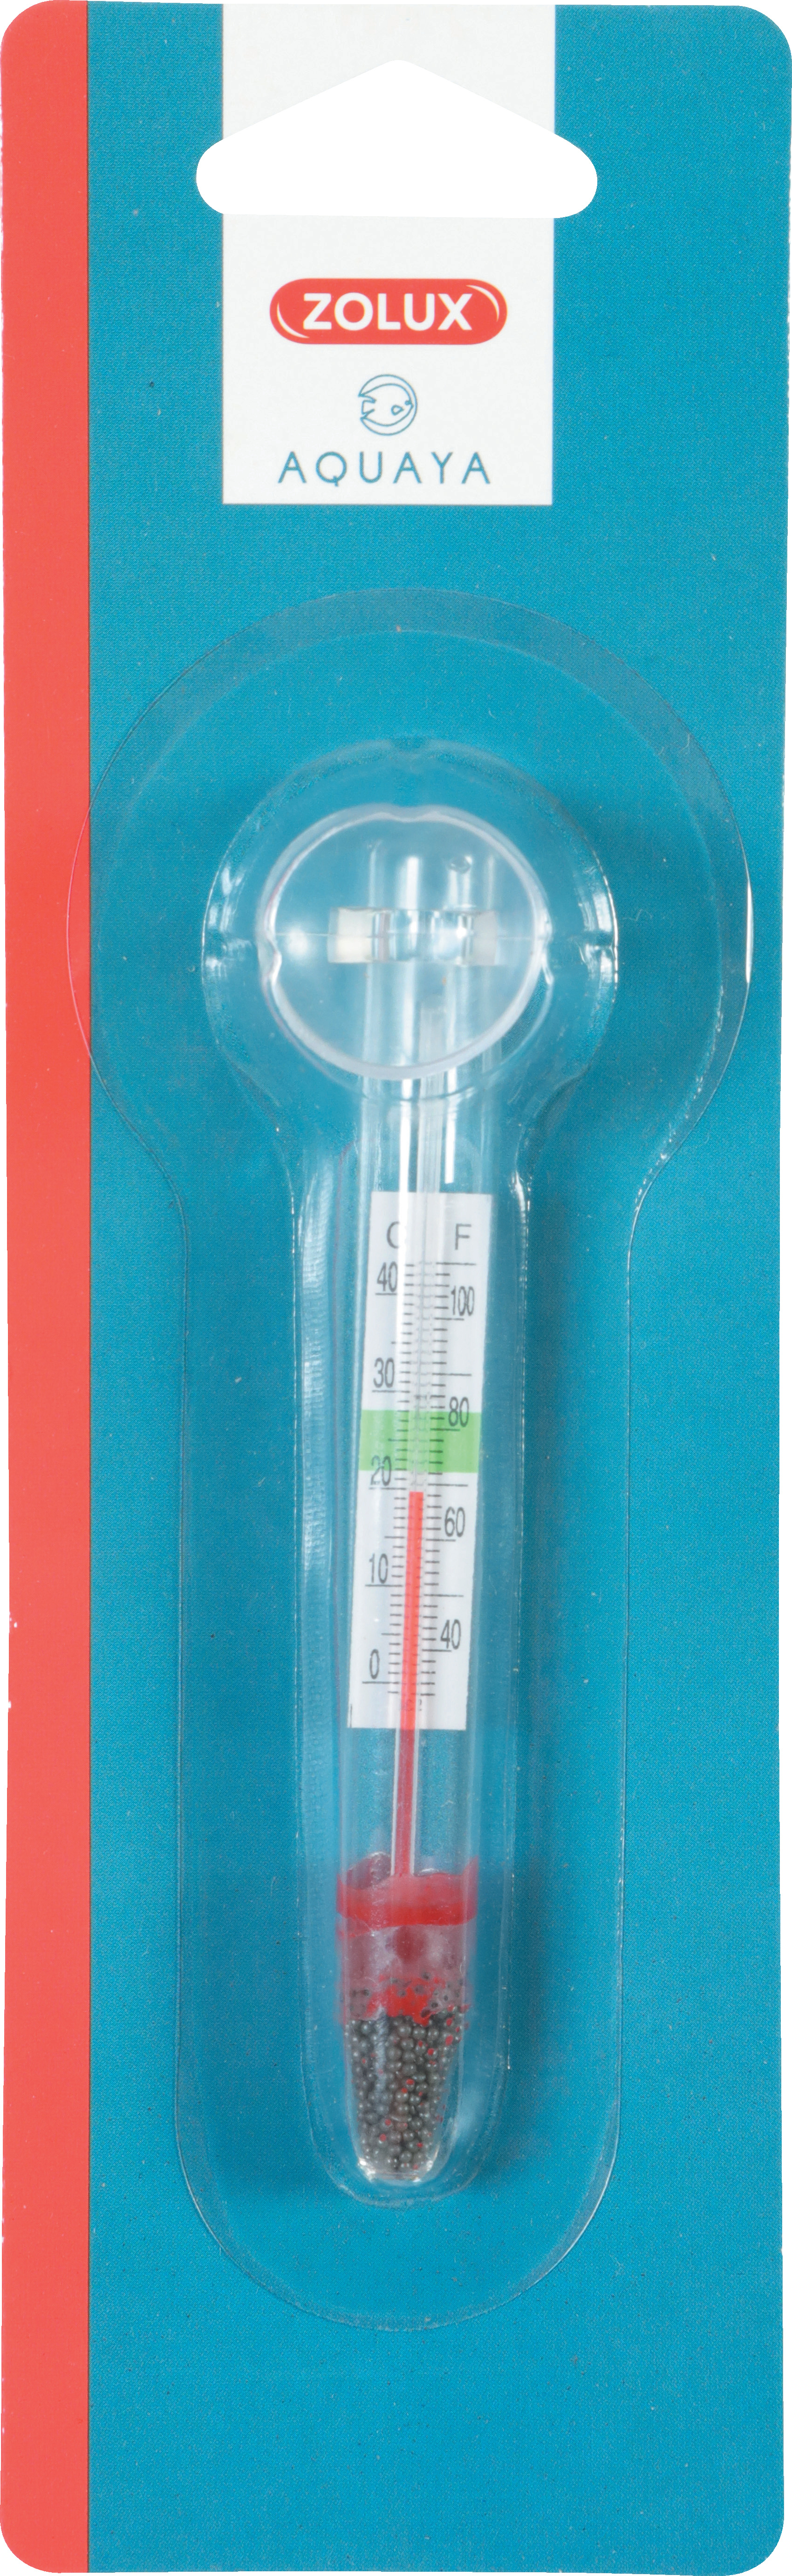 schwimmendes Thermometer mit Saugnapf Zolux